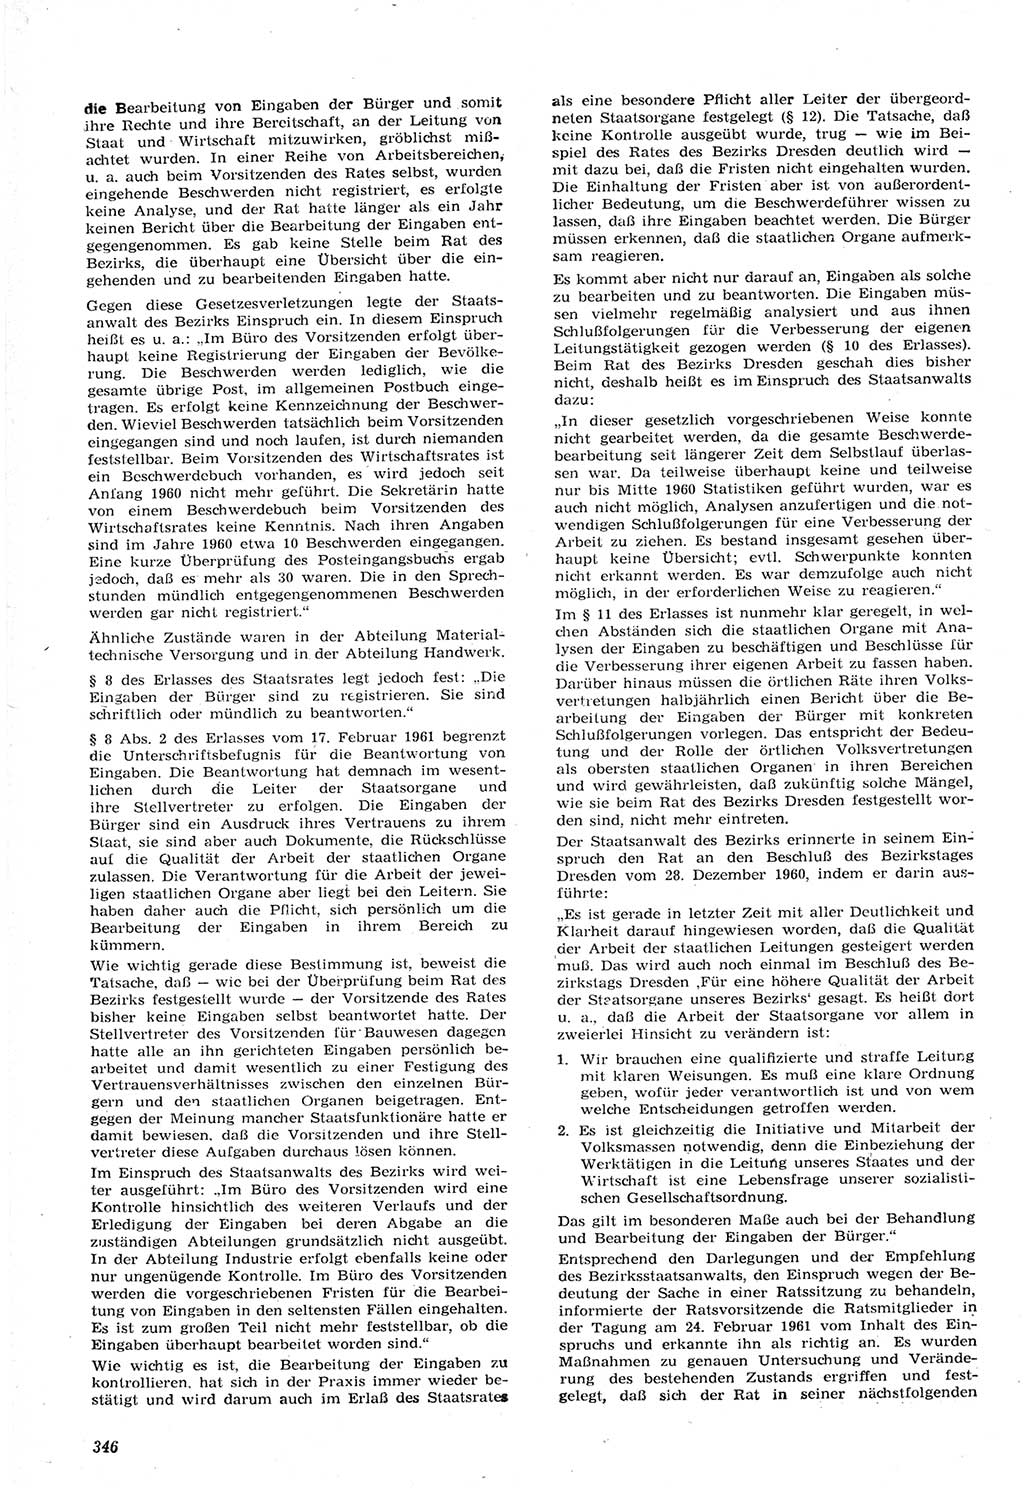 Neue Justiz (NJ), Zeitschrift für Recht und Rechtswissenschaft [Deutsche Demokratische Republik (DDR)], 15. Jahrgang 1961, Seite 346 (NJ DDR 1961, S. 346)